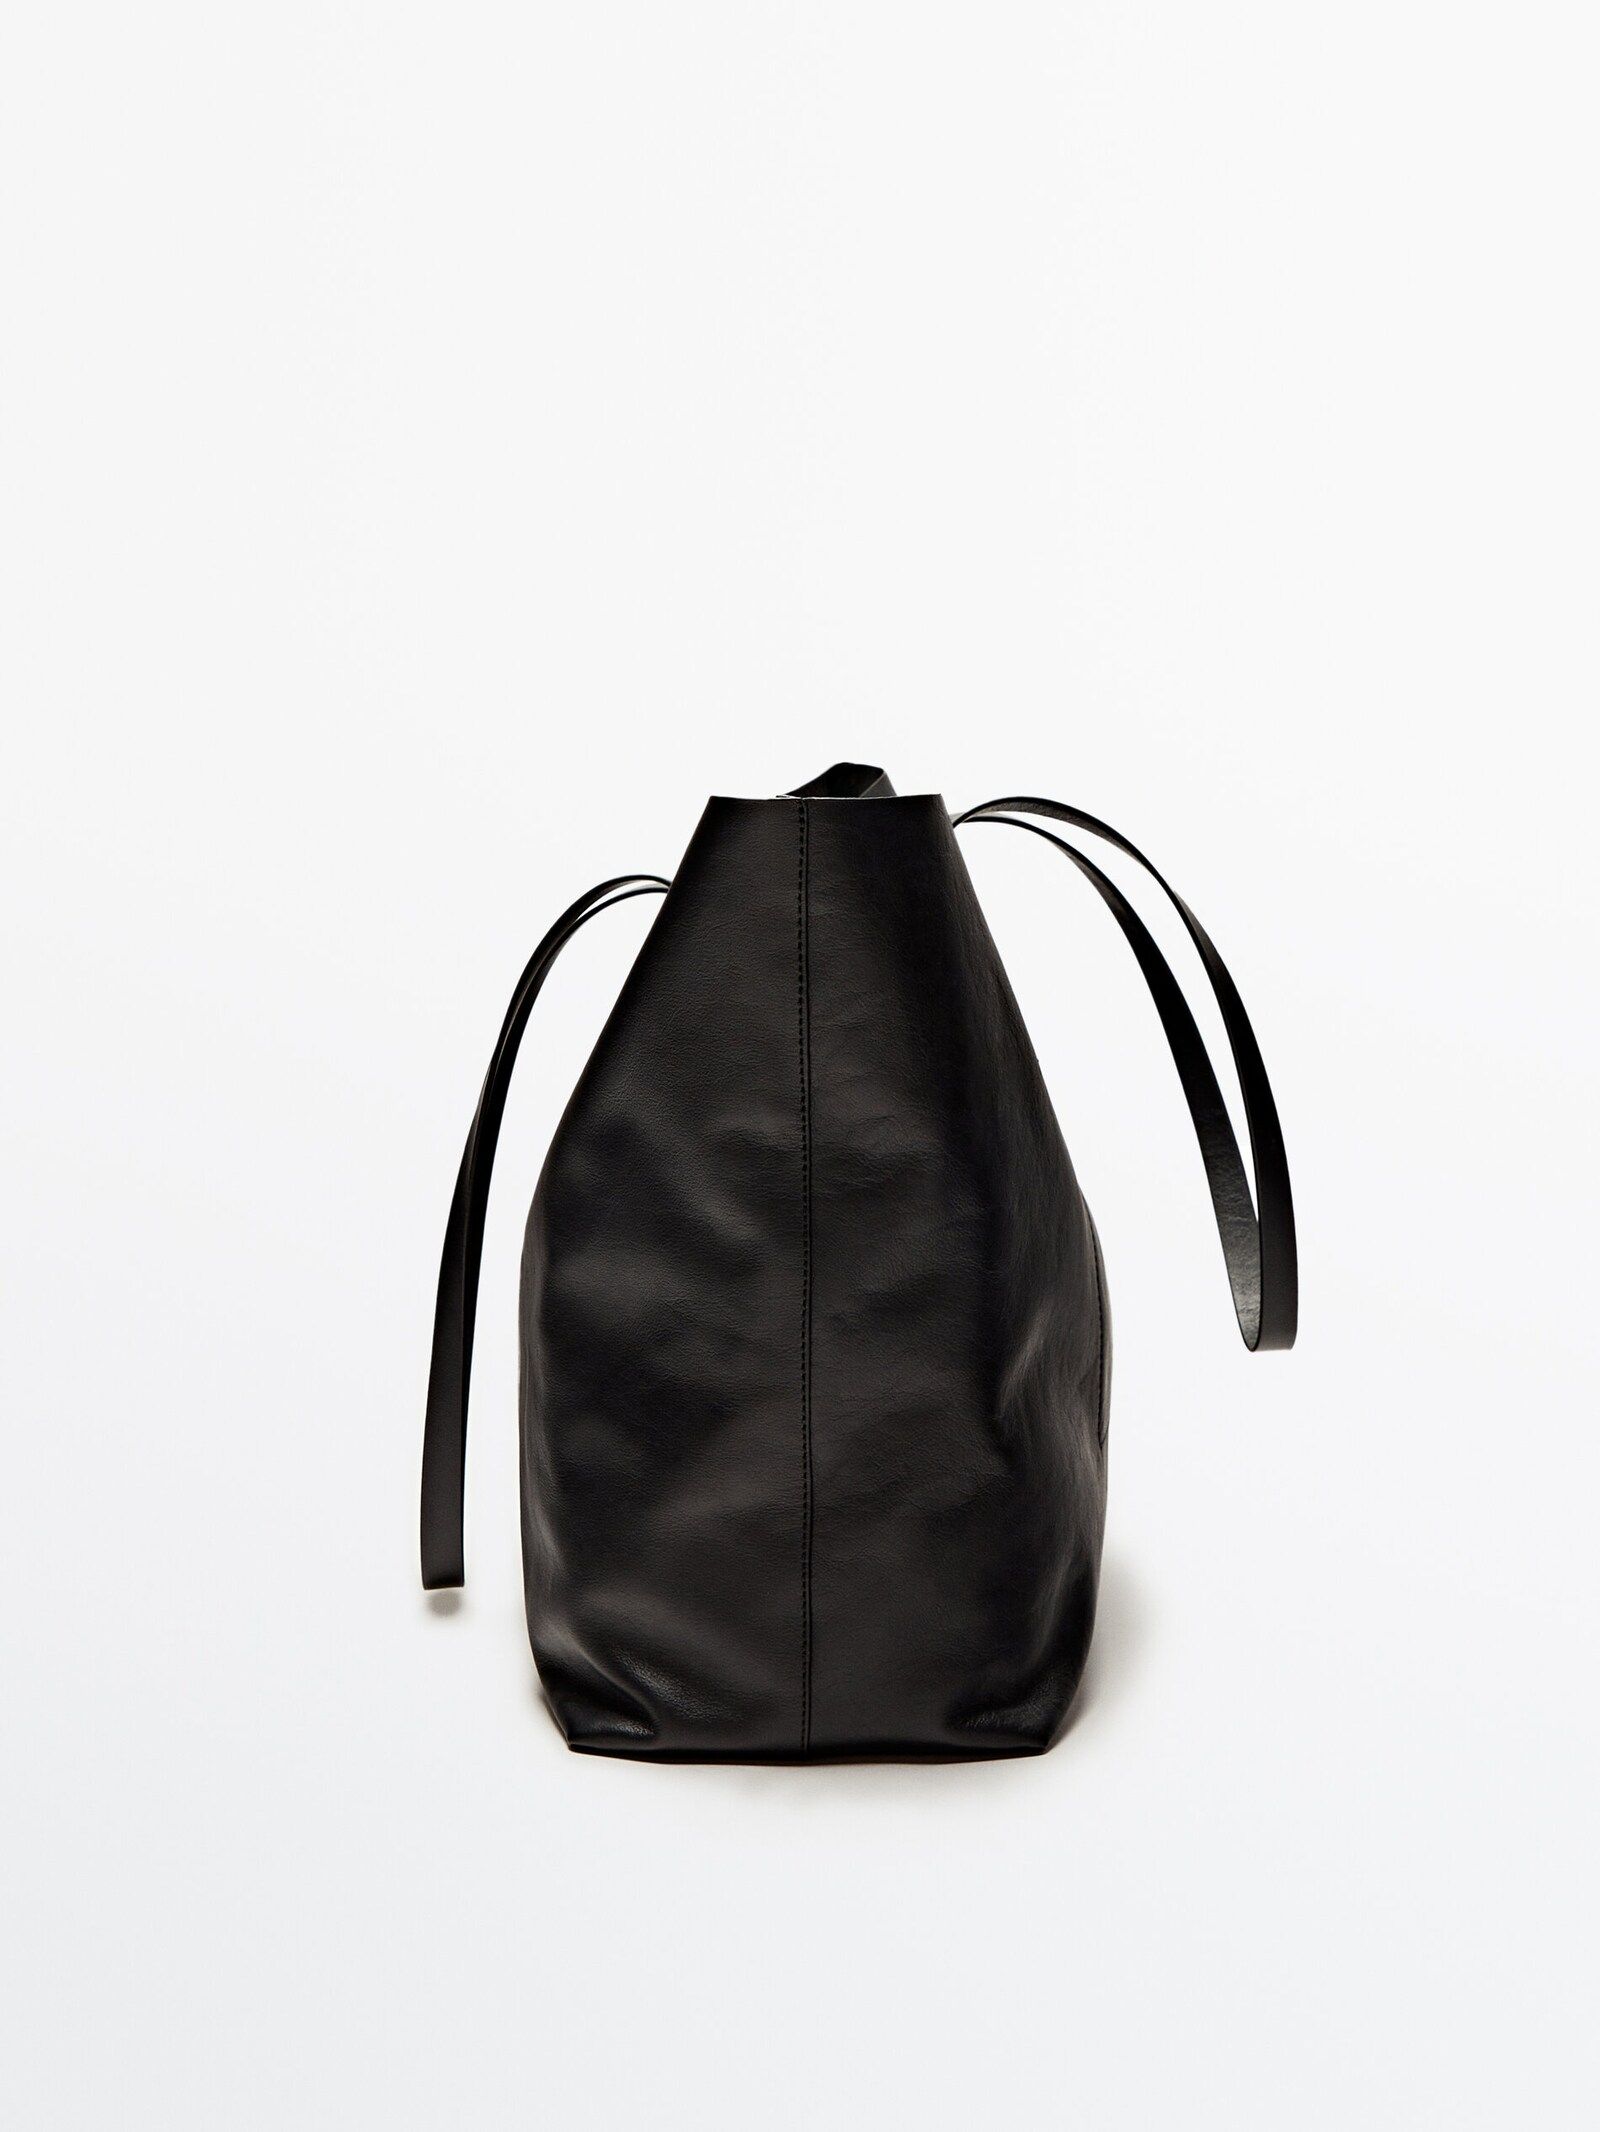 Nappa leather tote bag | Massimo Dutti (US)